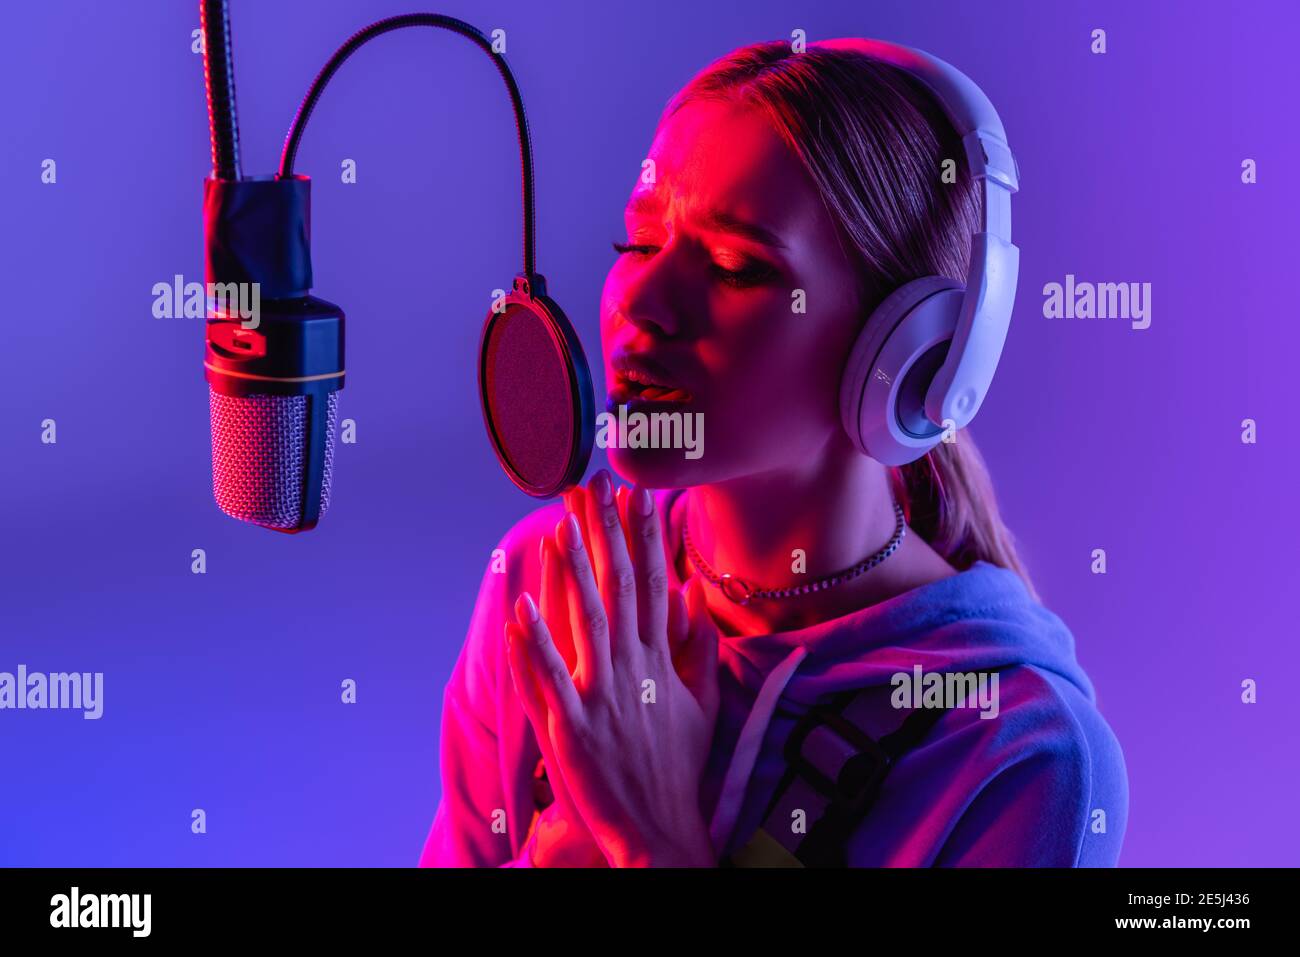 Junge Frau mit kabellosen Kopfhörern, die beim Singen Lieder aufzeichnet Violett mit Farbfilter Stockfoto